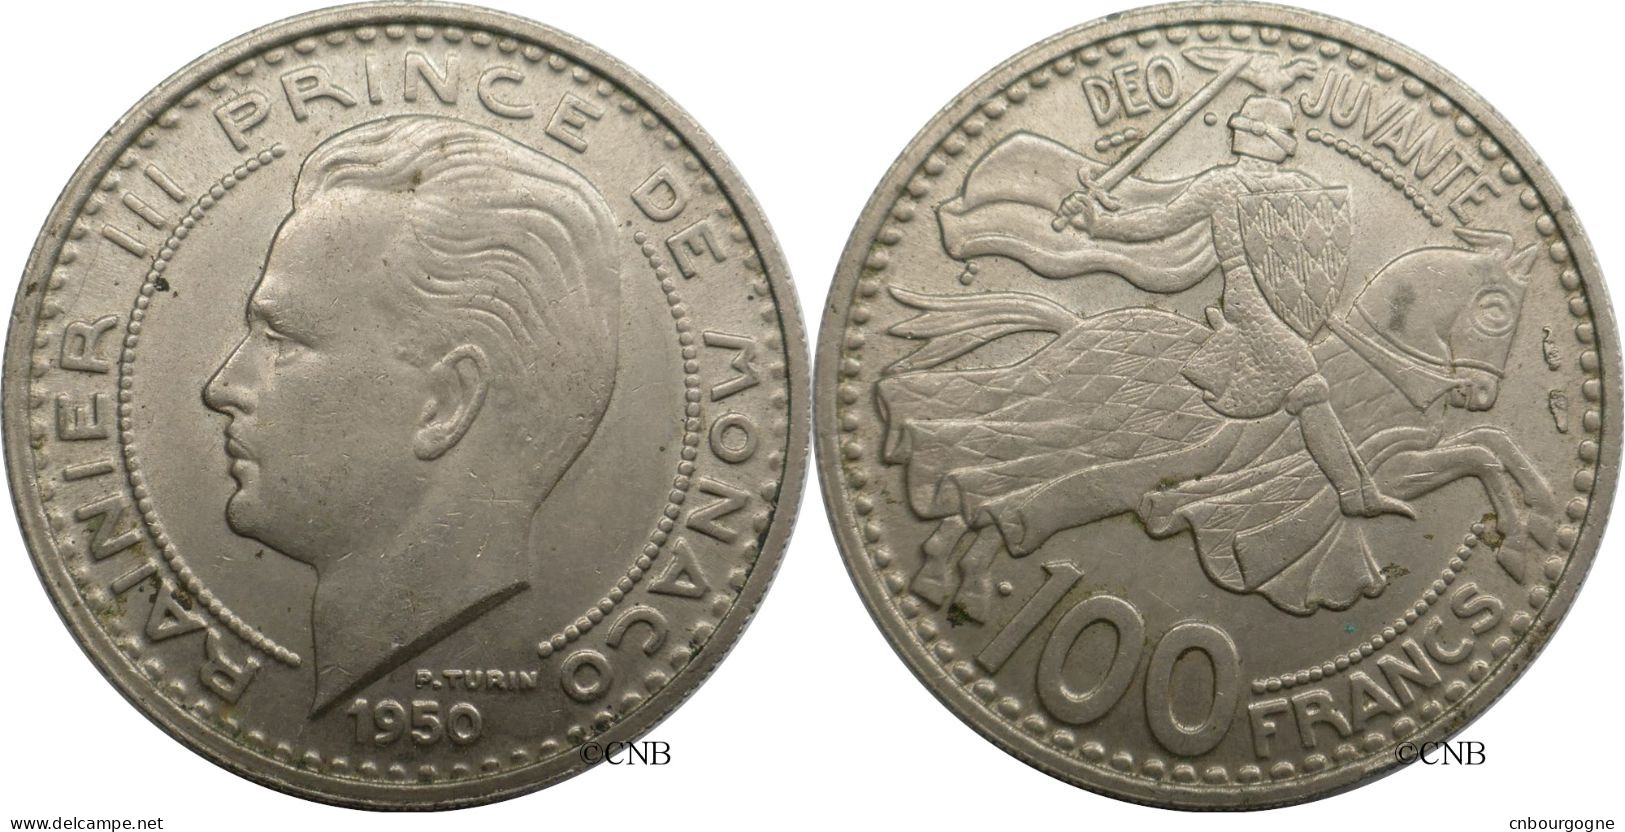 Monaco - Principauté - Rainier III - 100 Francs 1950 - SUP/AU58 - Mon6585 - 1949-1956 Old Francs